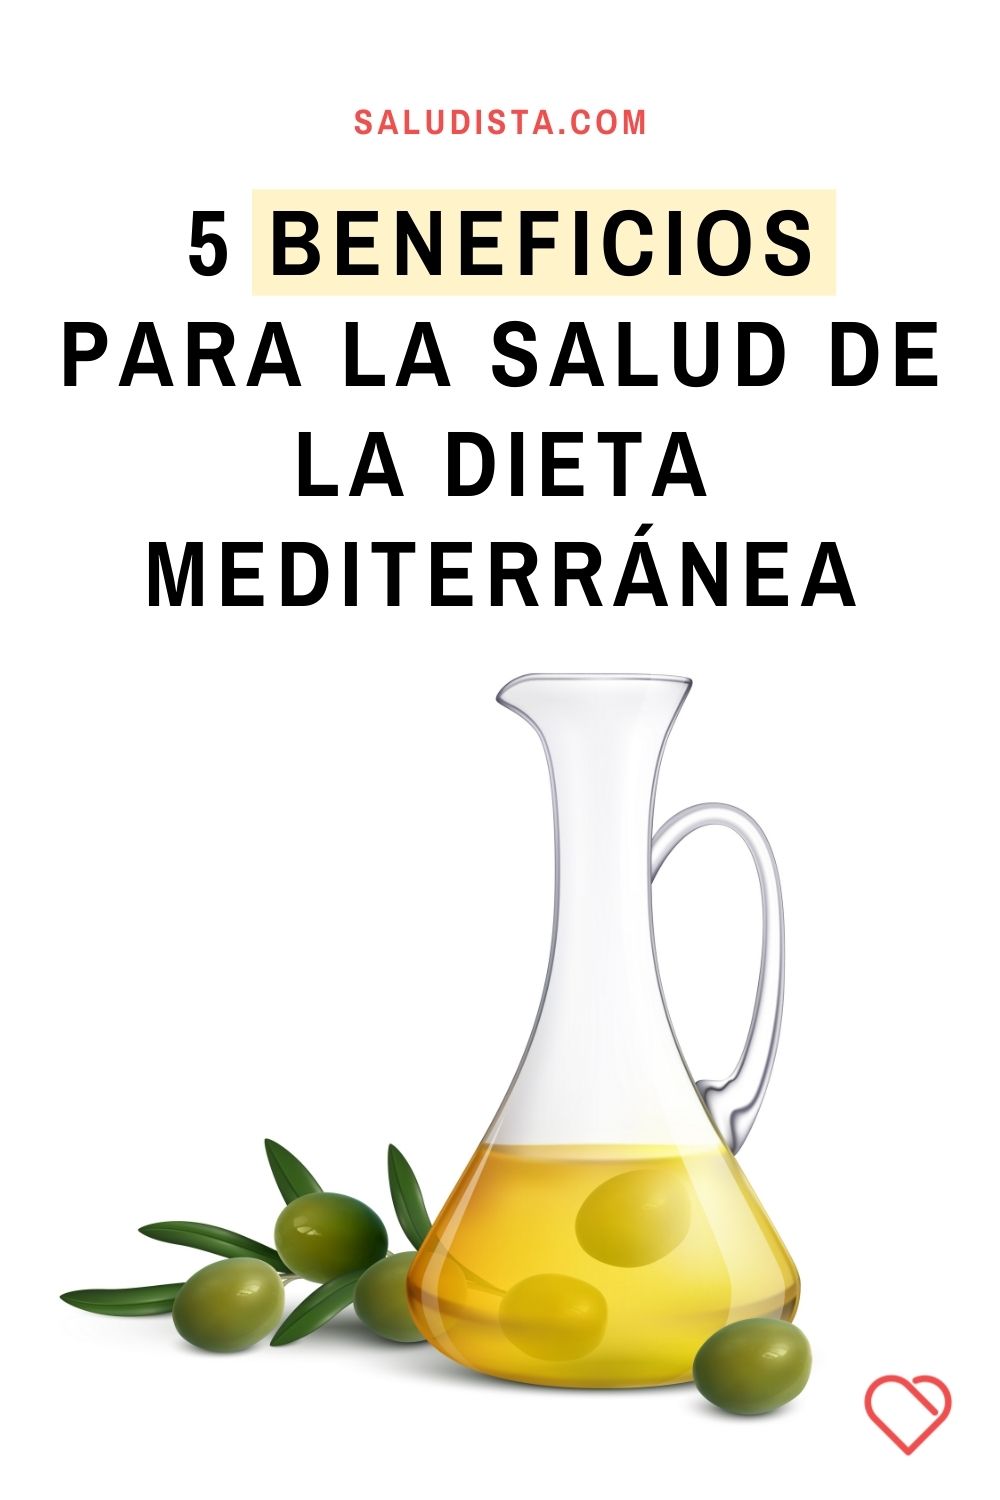 5 Beneficios para la salud de la dieta mediterránea